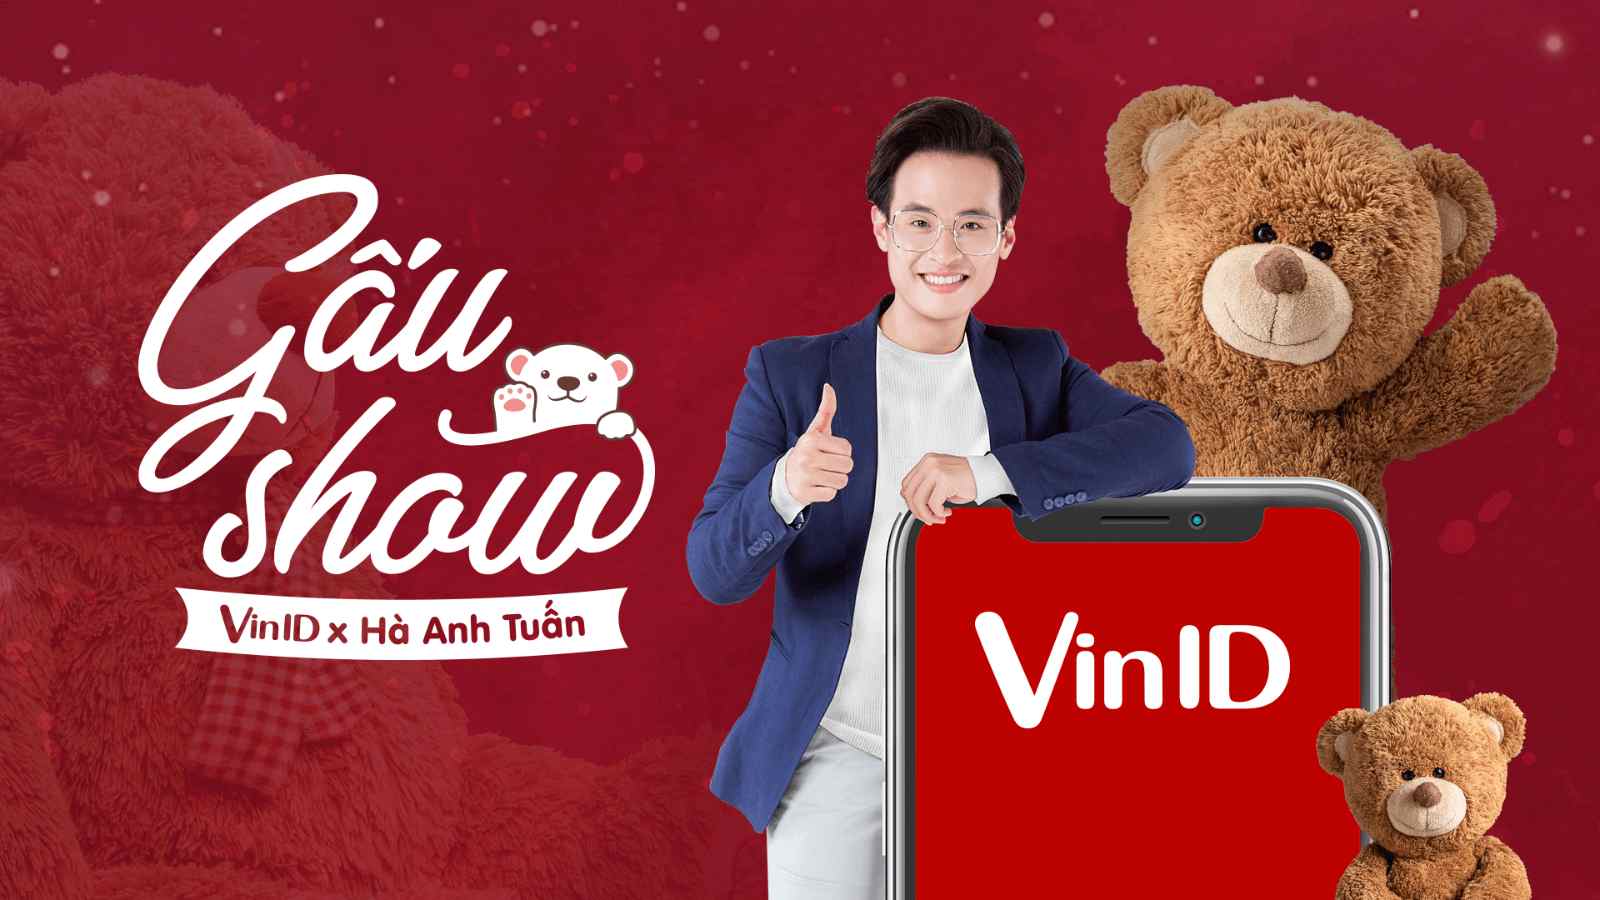 Tưng bừng ưu đãi với Gấu Show của Hà Anh Tuấn và VinID